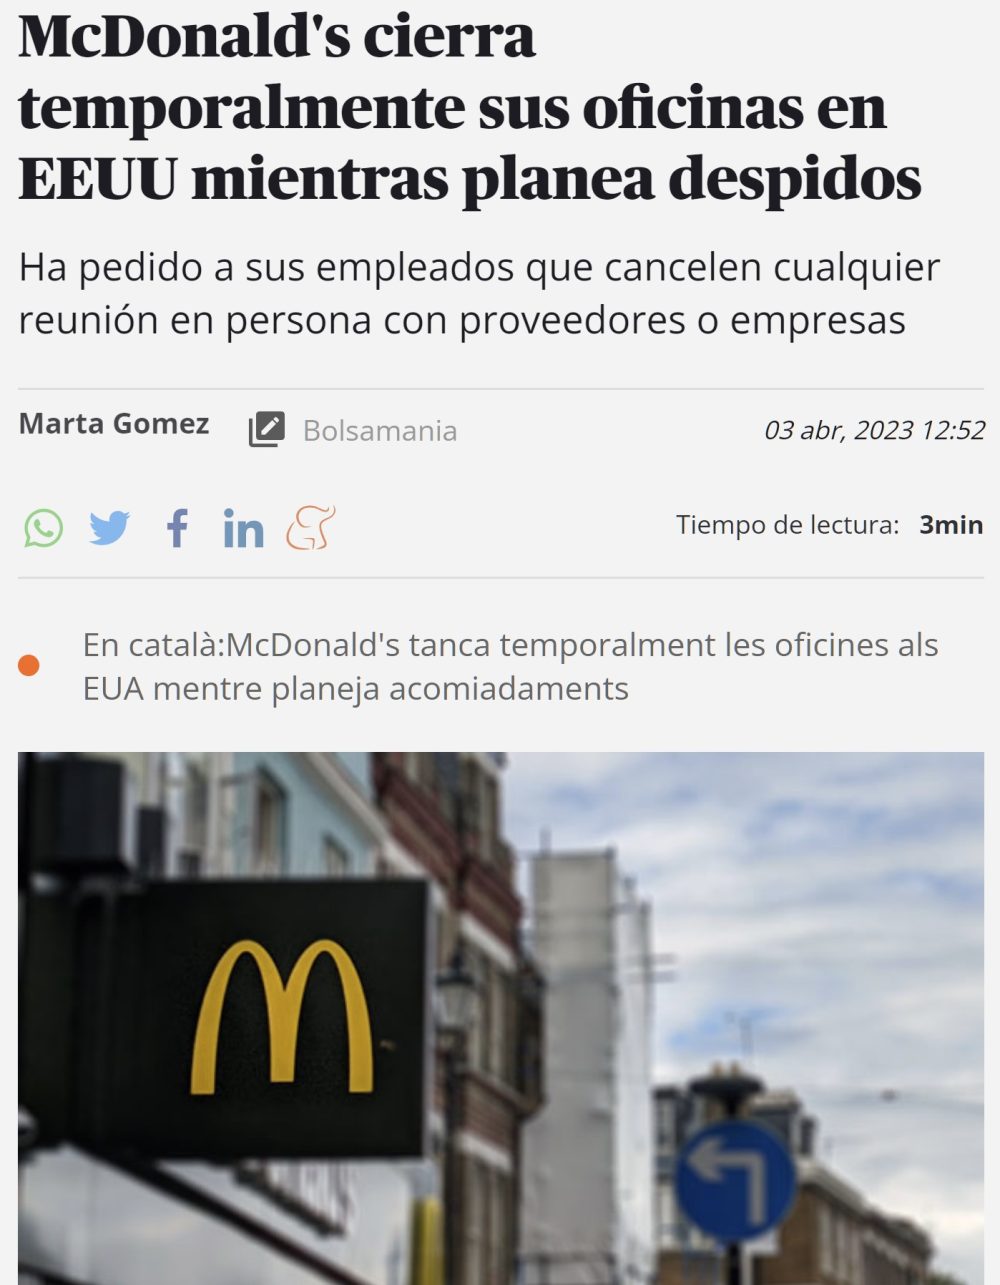 McDonald's cierra temporalmente todas sus oficinas en Estados Unidos